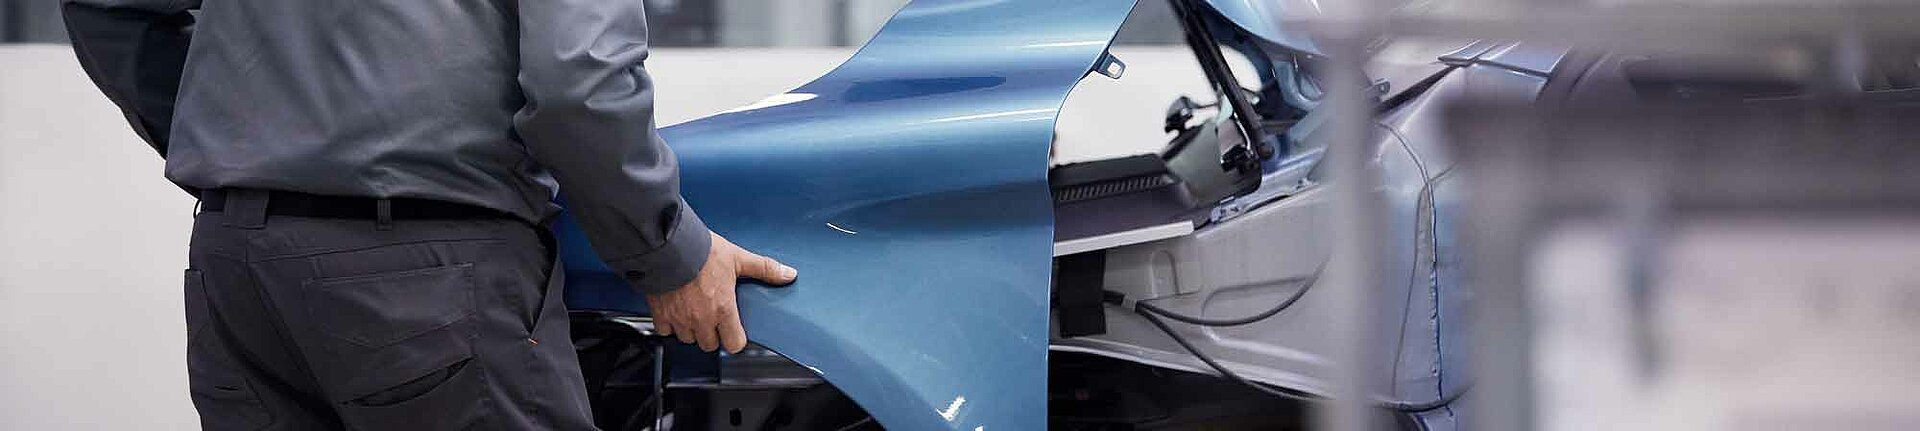 Volvo reparatie schadeherstel van roosmalen banner